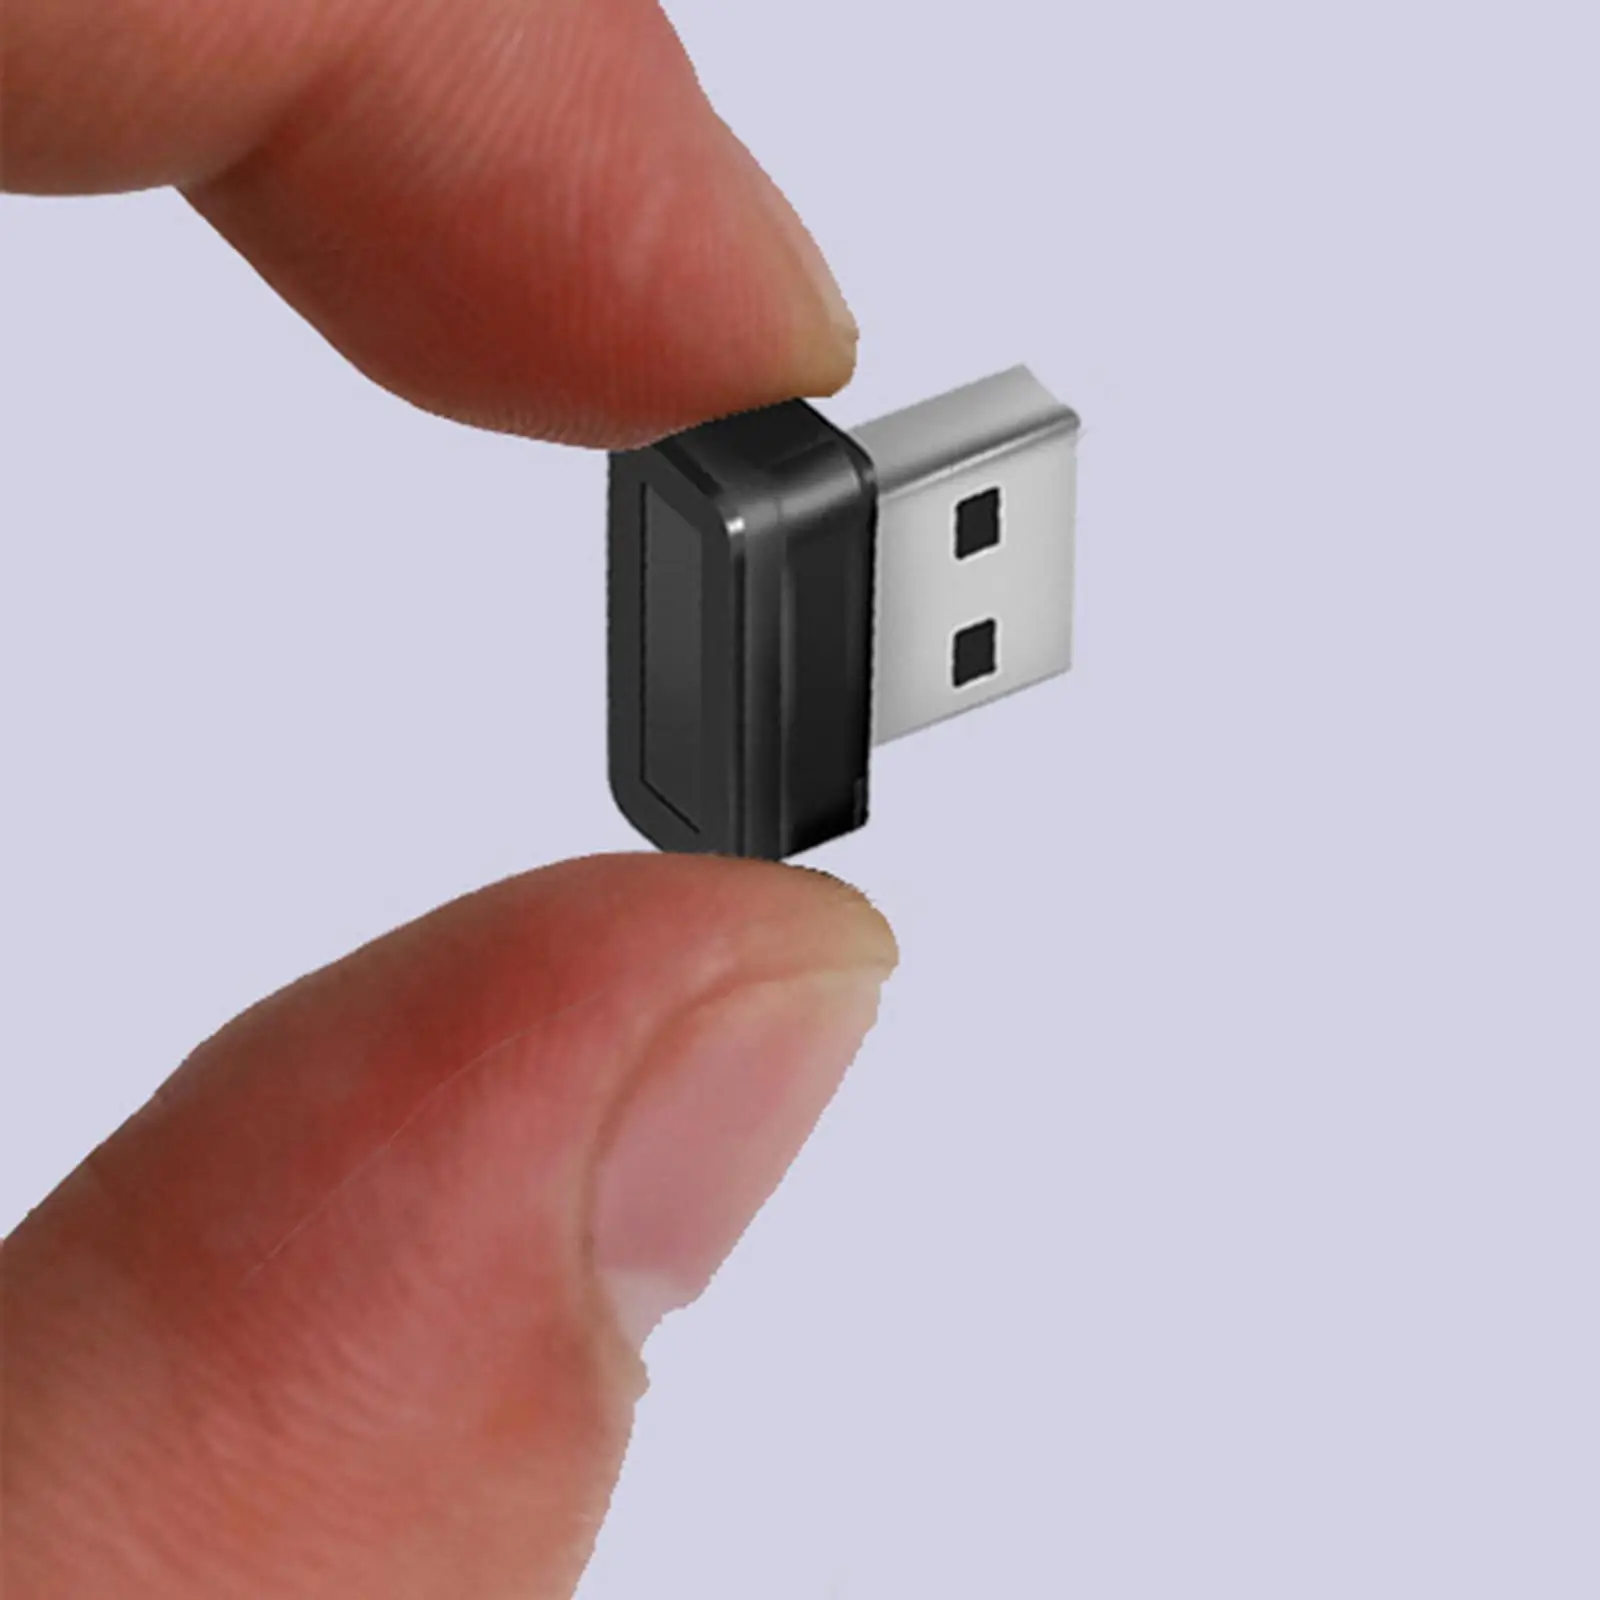 Portable USB Fingerprint Reader 360° Anti Spoofing Speedy Matching Fingerprint Scanner 10 sets of fingerpint use